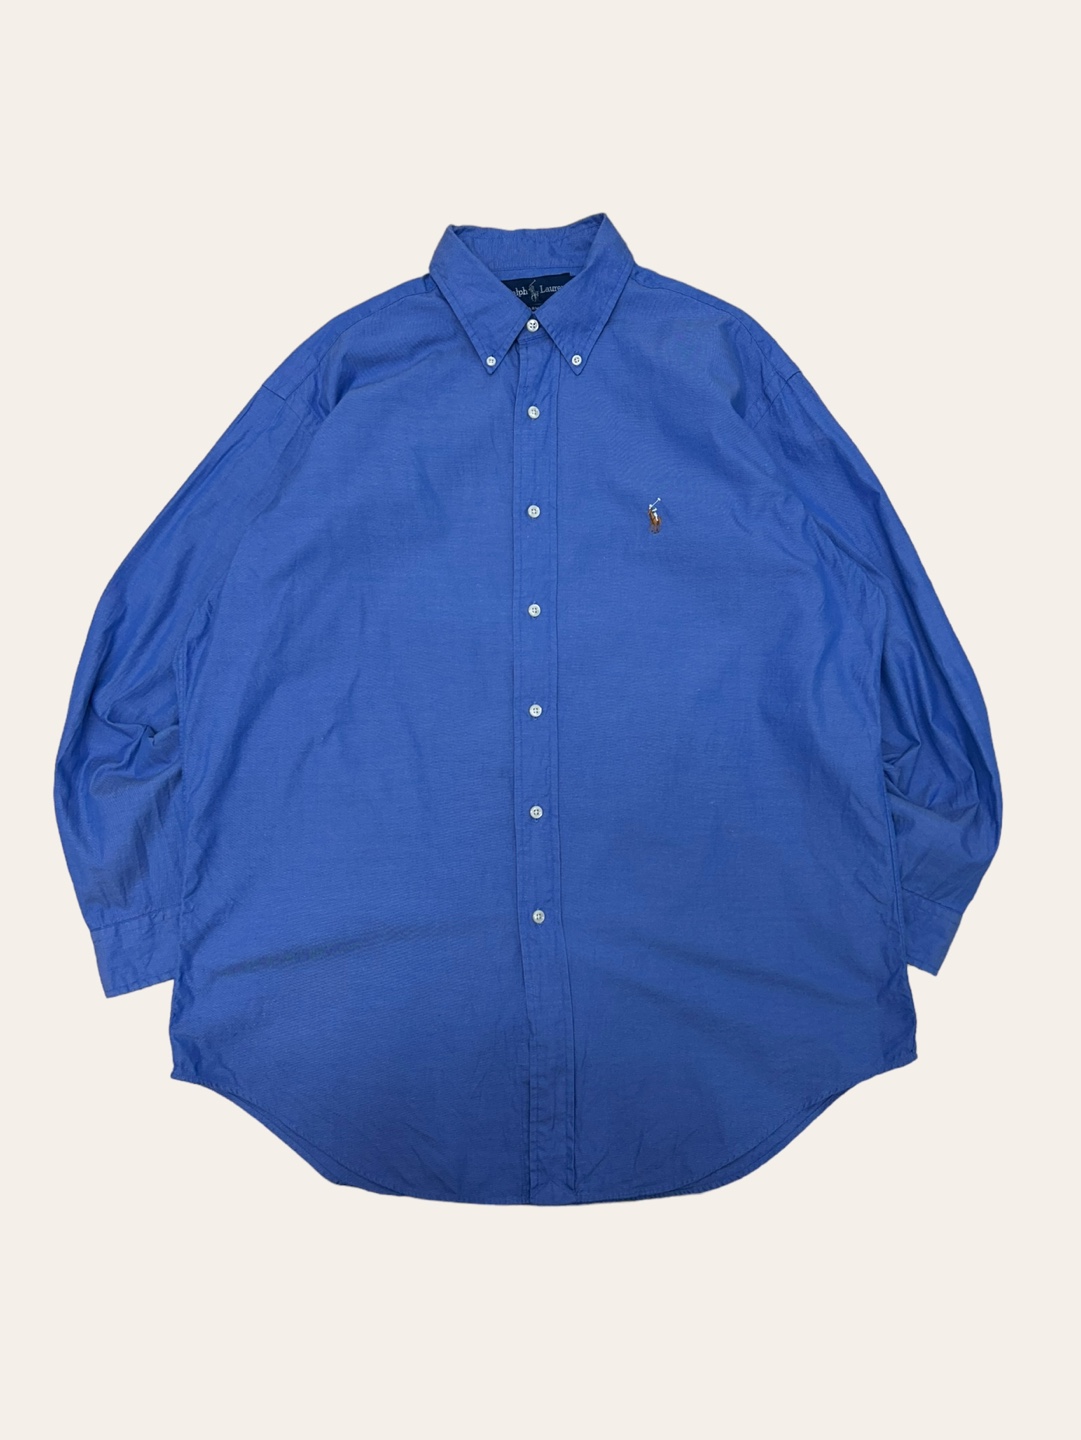 (From USA)Polo ralph lauren blue poplin shirt 16